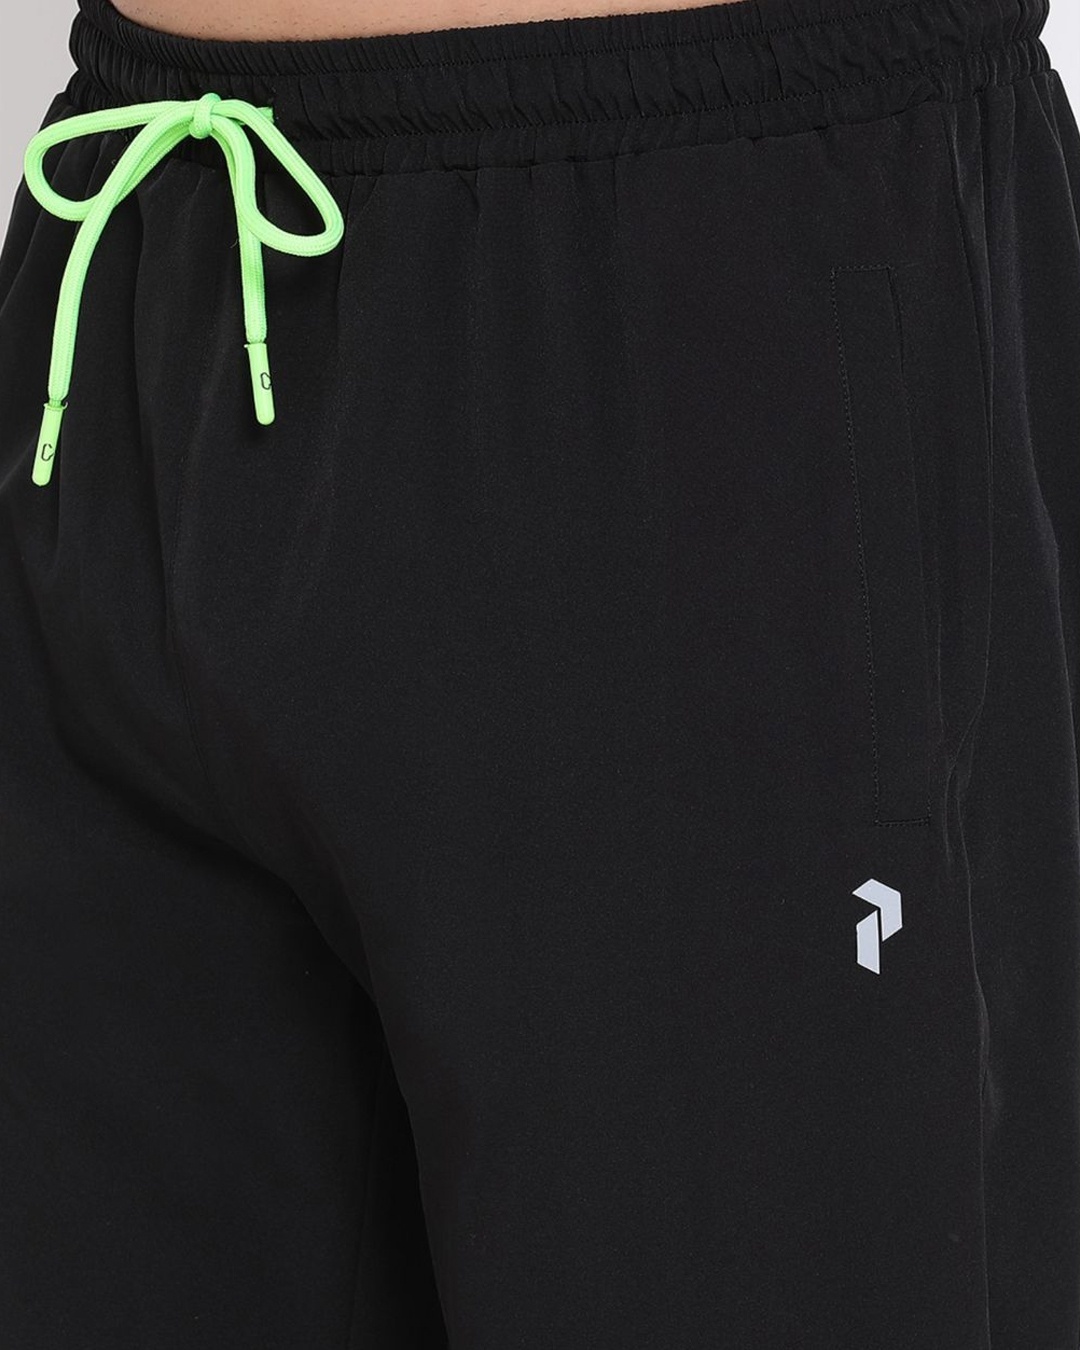 Shop Men's Black Polyester Track Pants